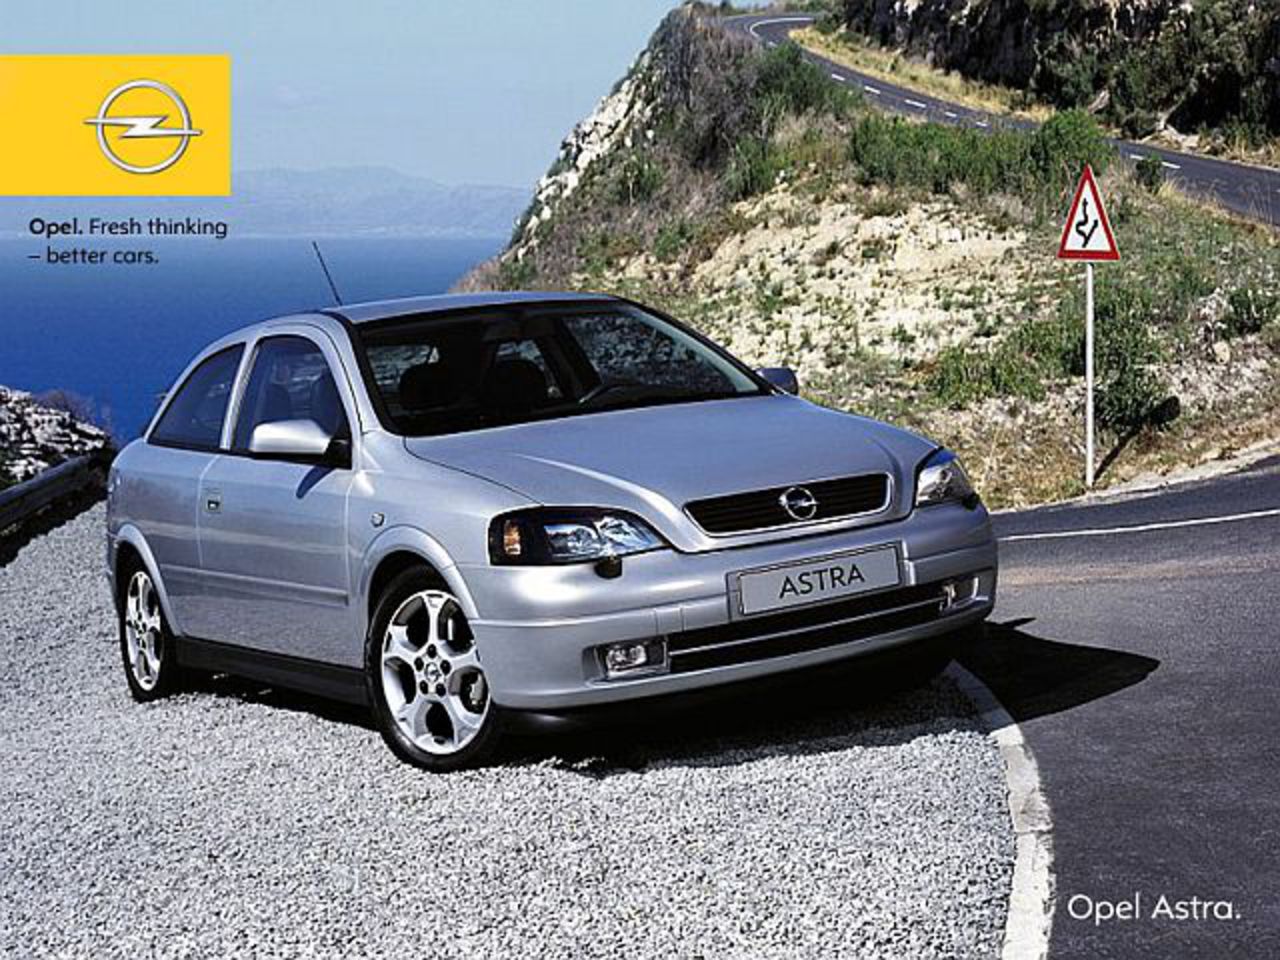 Opel Astra Classic: 01 photo * Opel Astra Classic: 02 photo